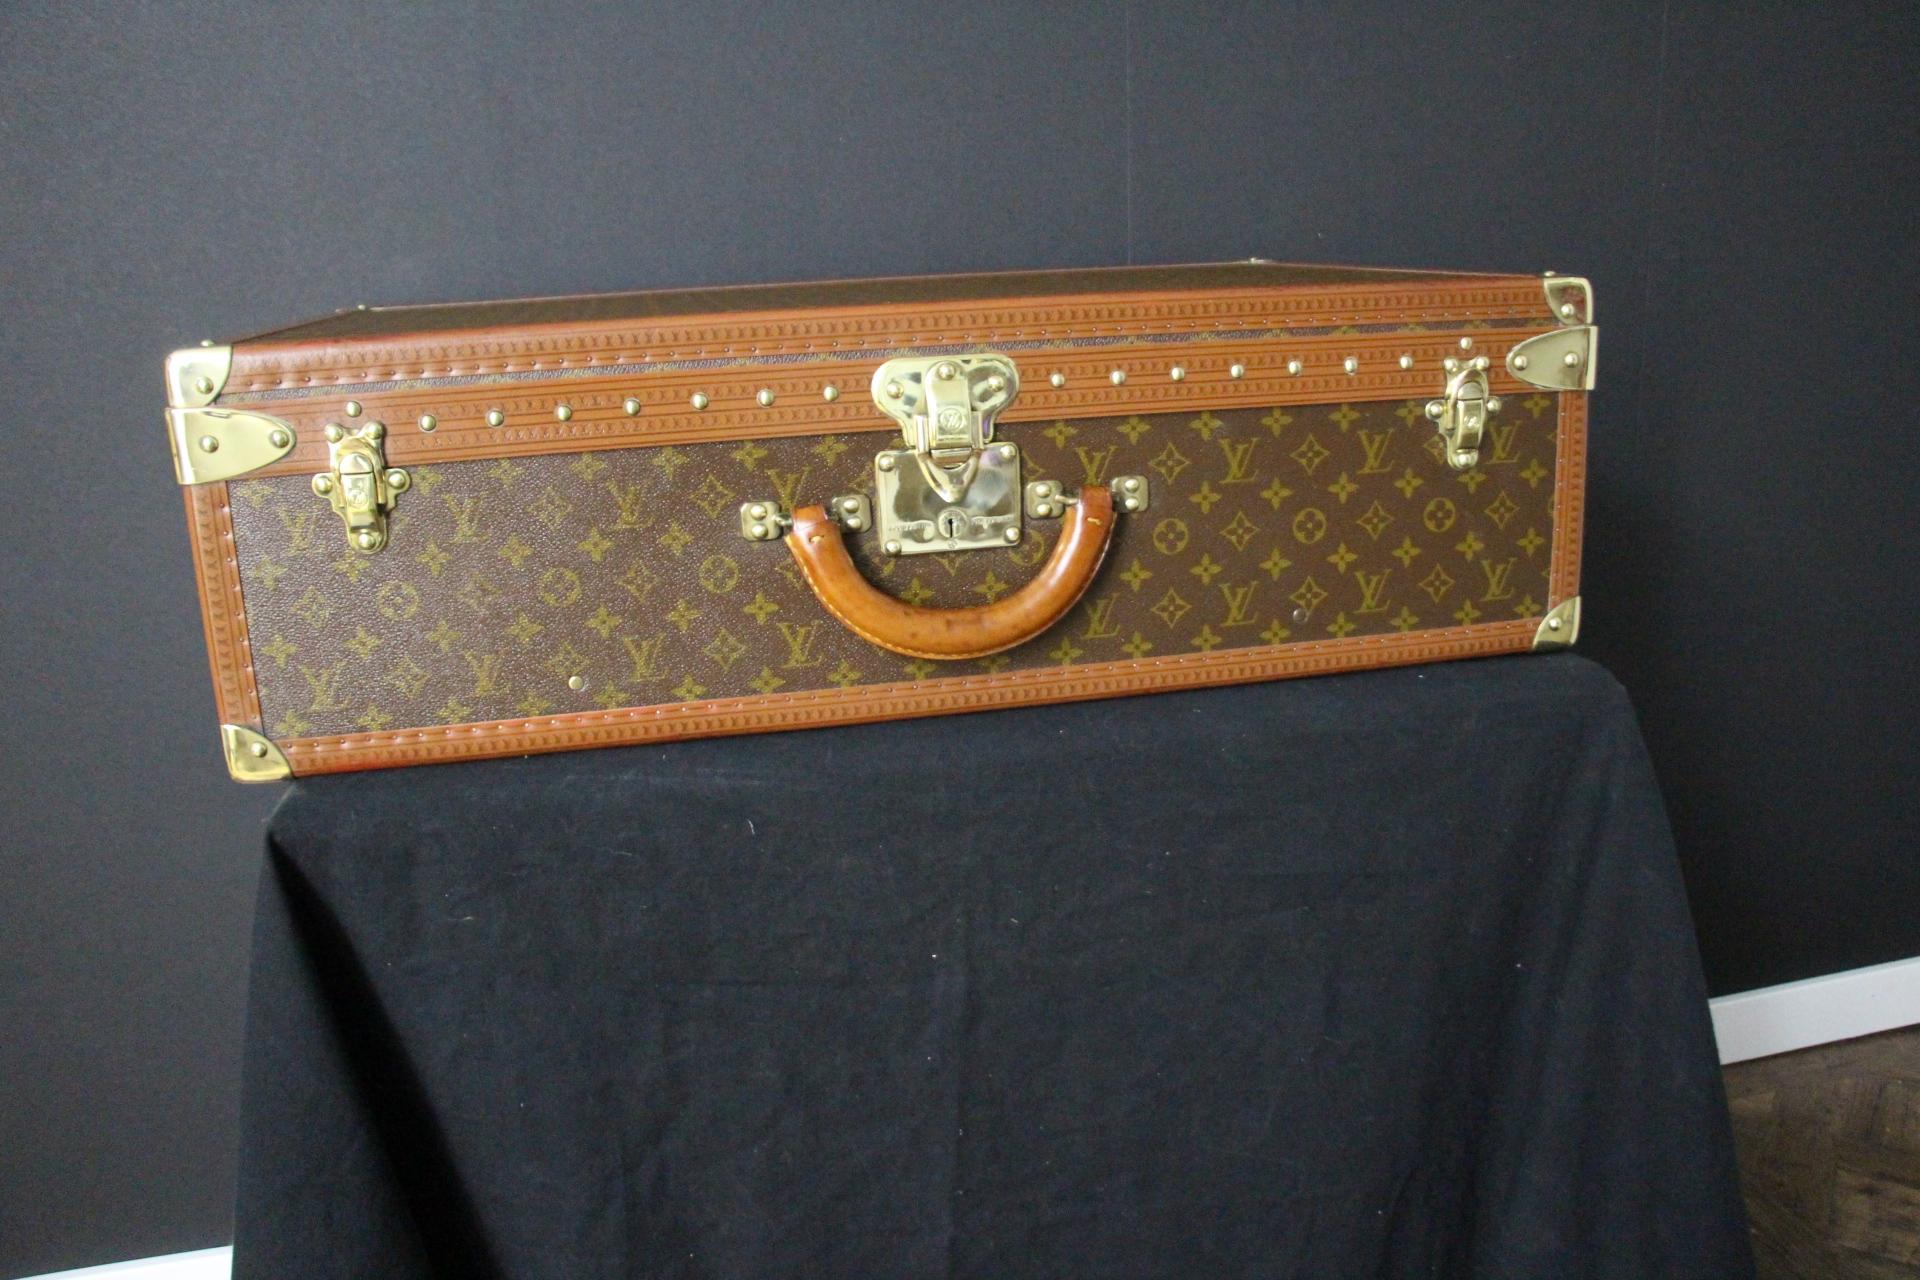 Dieses Gepäckstück ist ein prächtiger Louis Vuitton Alzer Monogramm-Koffer. Dieser 75 cm große Koffer ist fast der größte und sicherlich auch der luxuriöseste Koffer von Louis Vuitton. Sie verfügt über alle Louis Vuitton Beschläge aus massivem